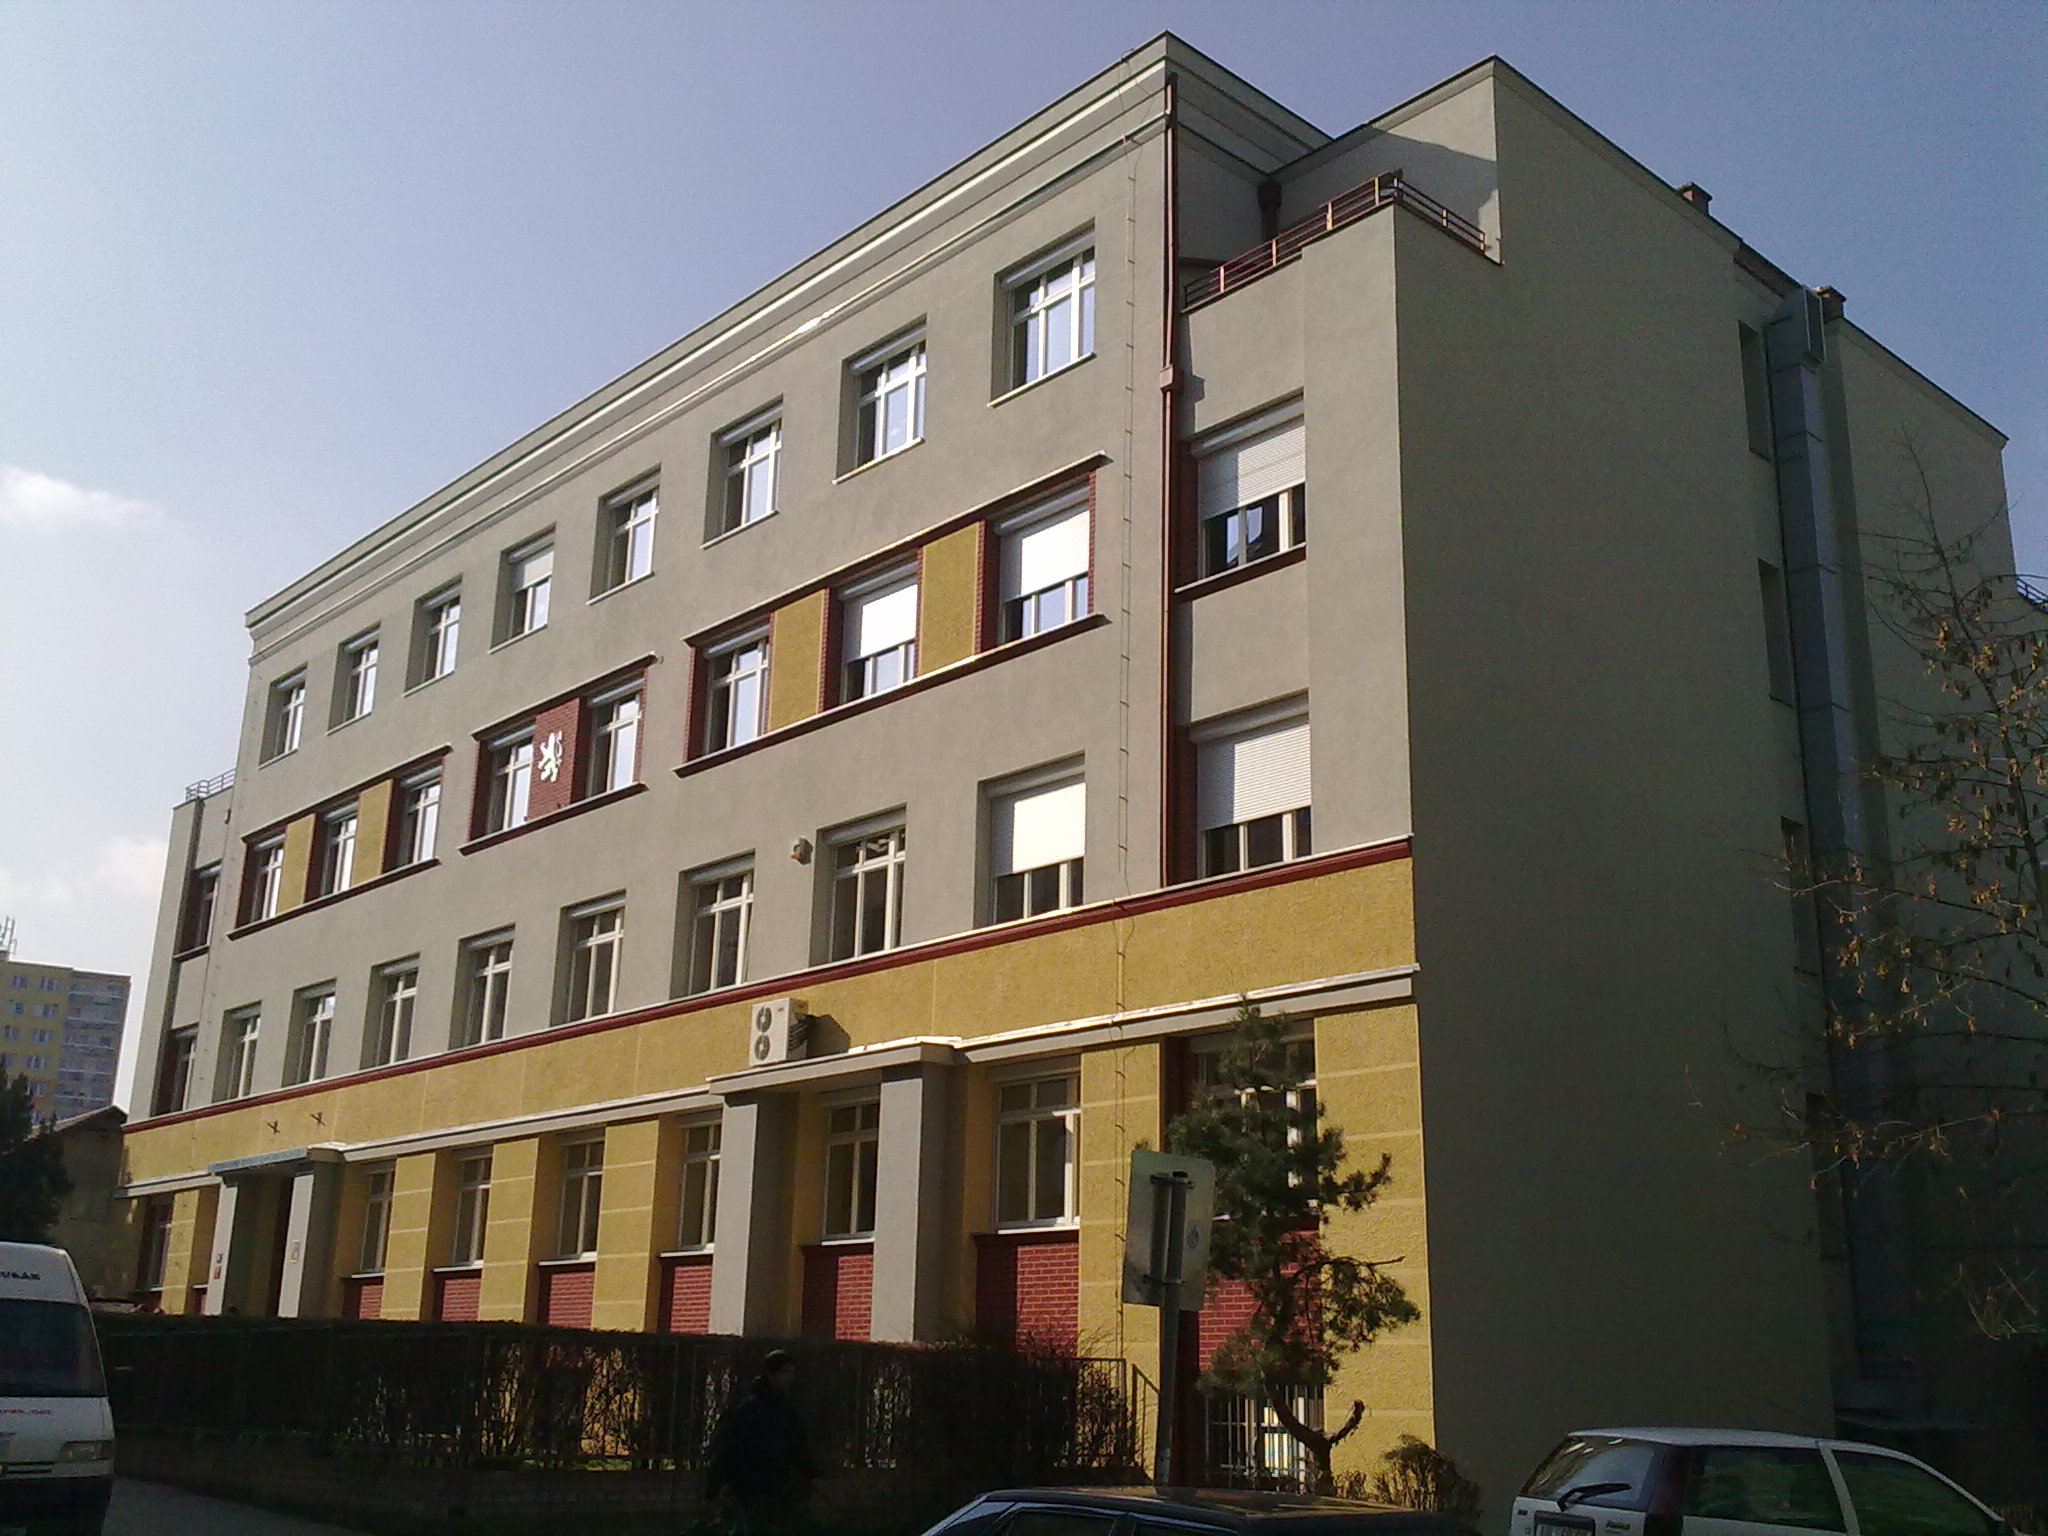 budova Gymnázia po rekonstrukci, která probehla v roce 2011 / Building of the gymnasium after reconstruction in 2011